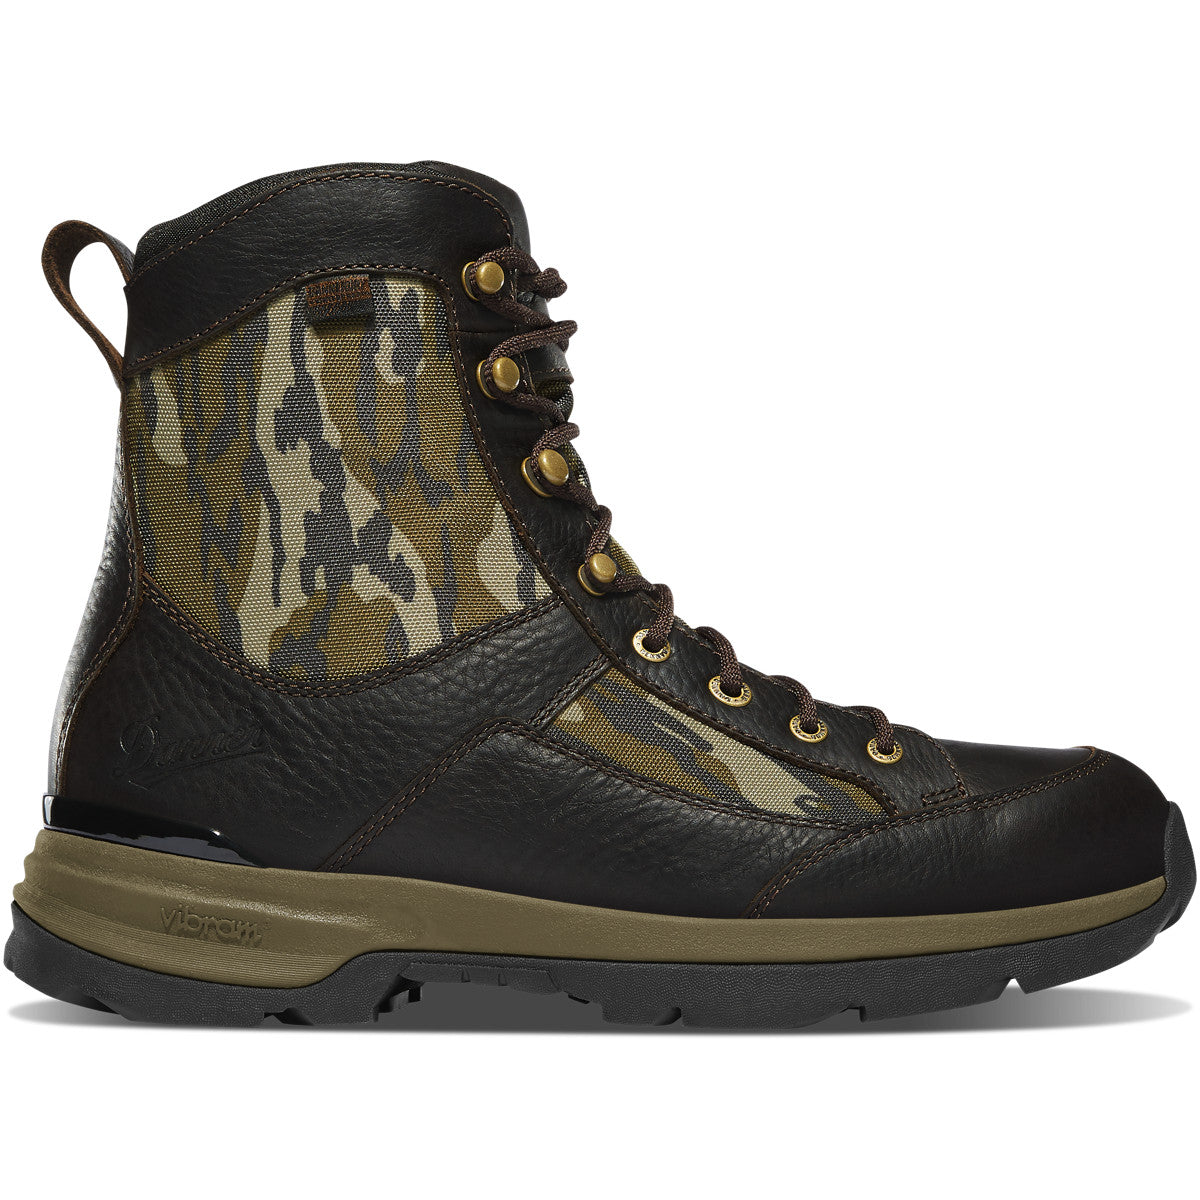 Danner Men's Recurve 7" WP Hunt Boot - Mossy Oak Bottomland - 47613  - Overlook Boots